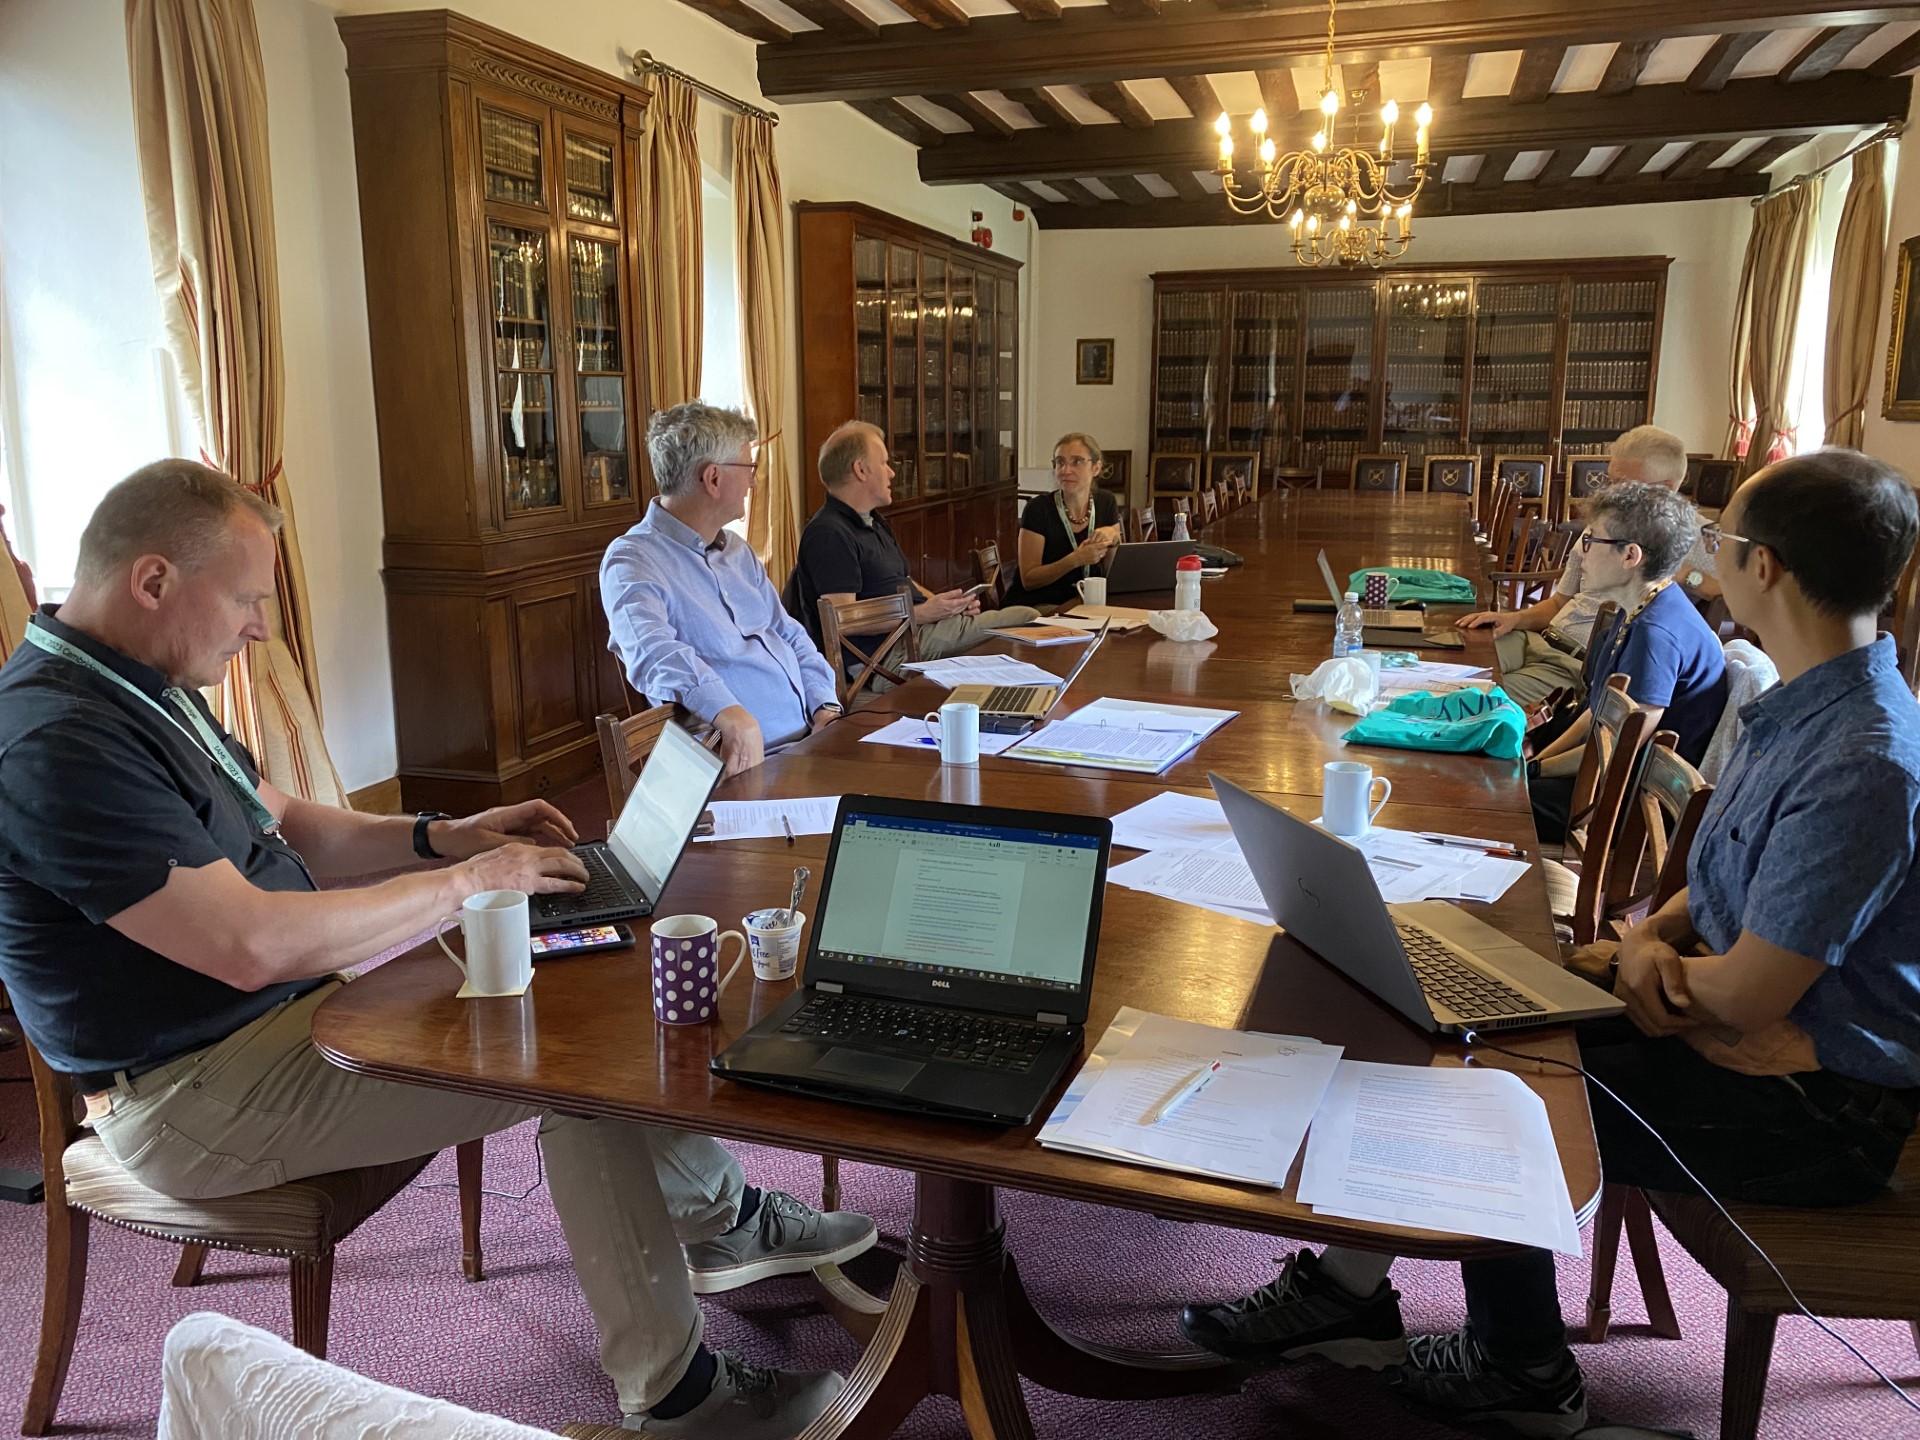 The Board meeting in Cambridge